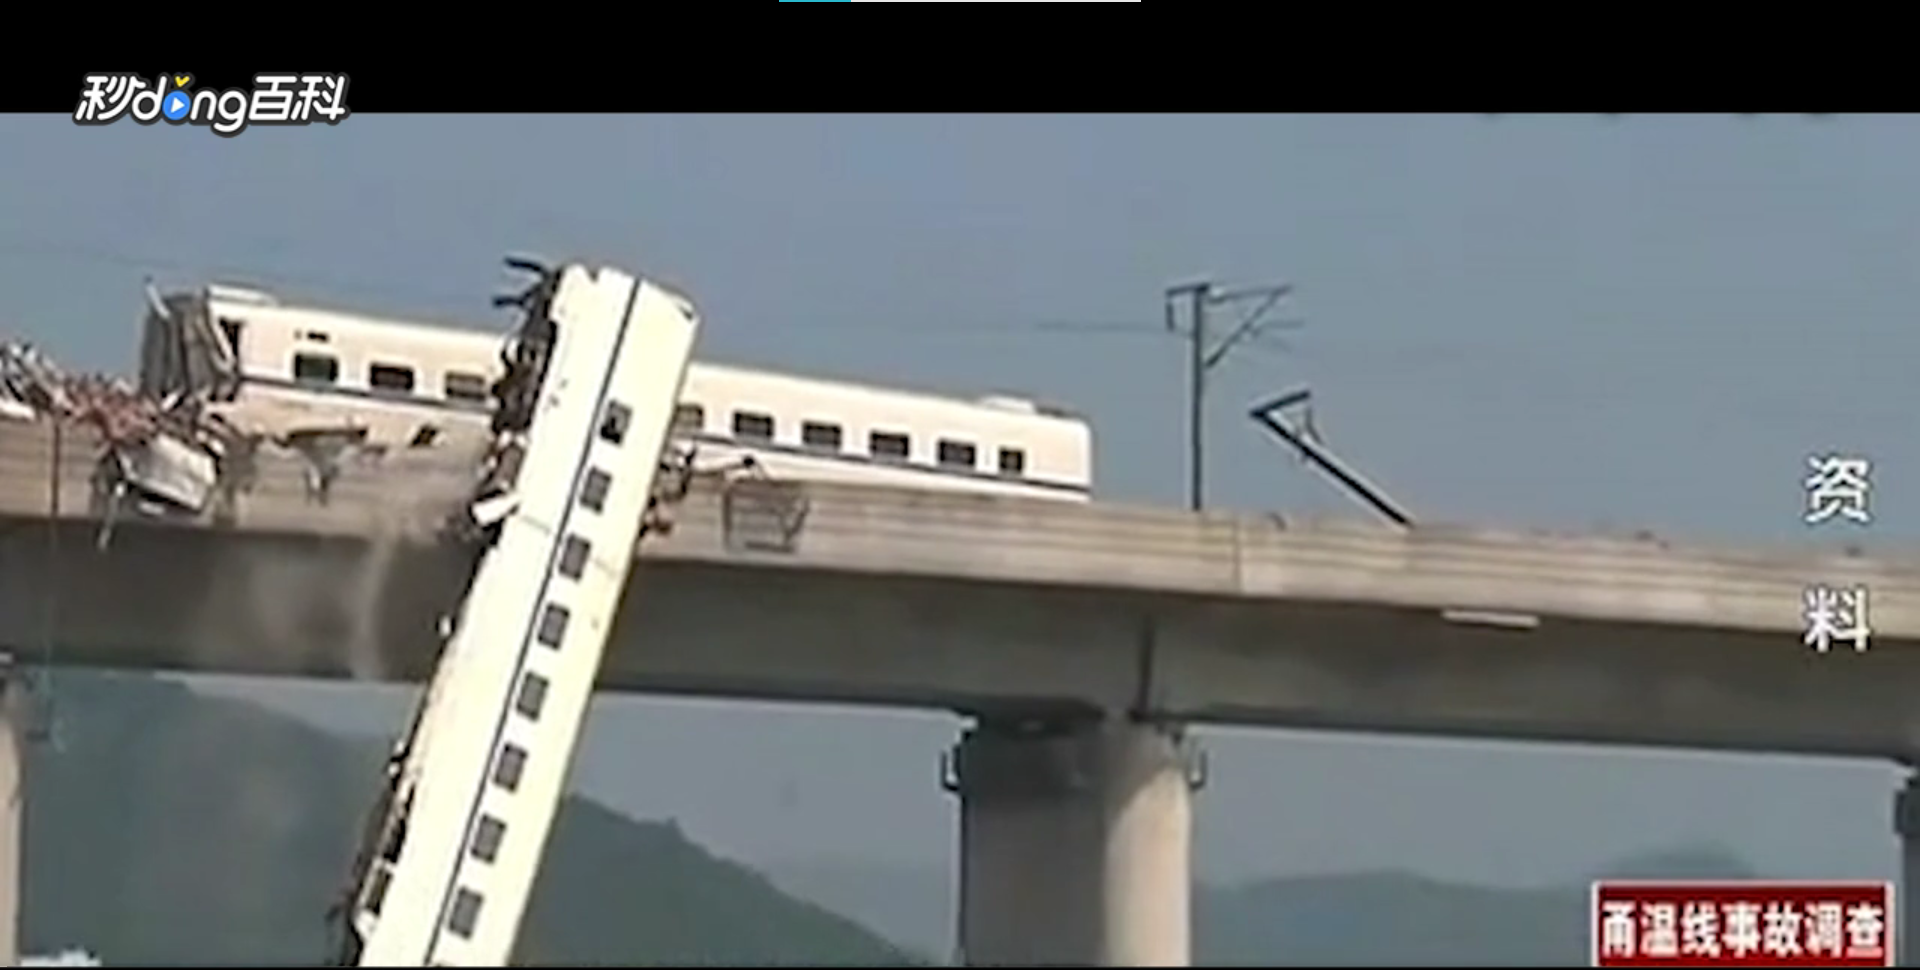 2011年中國發生溫州高鐵追撞事件。圖/翻攝自百度百科